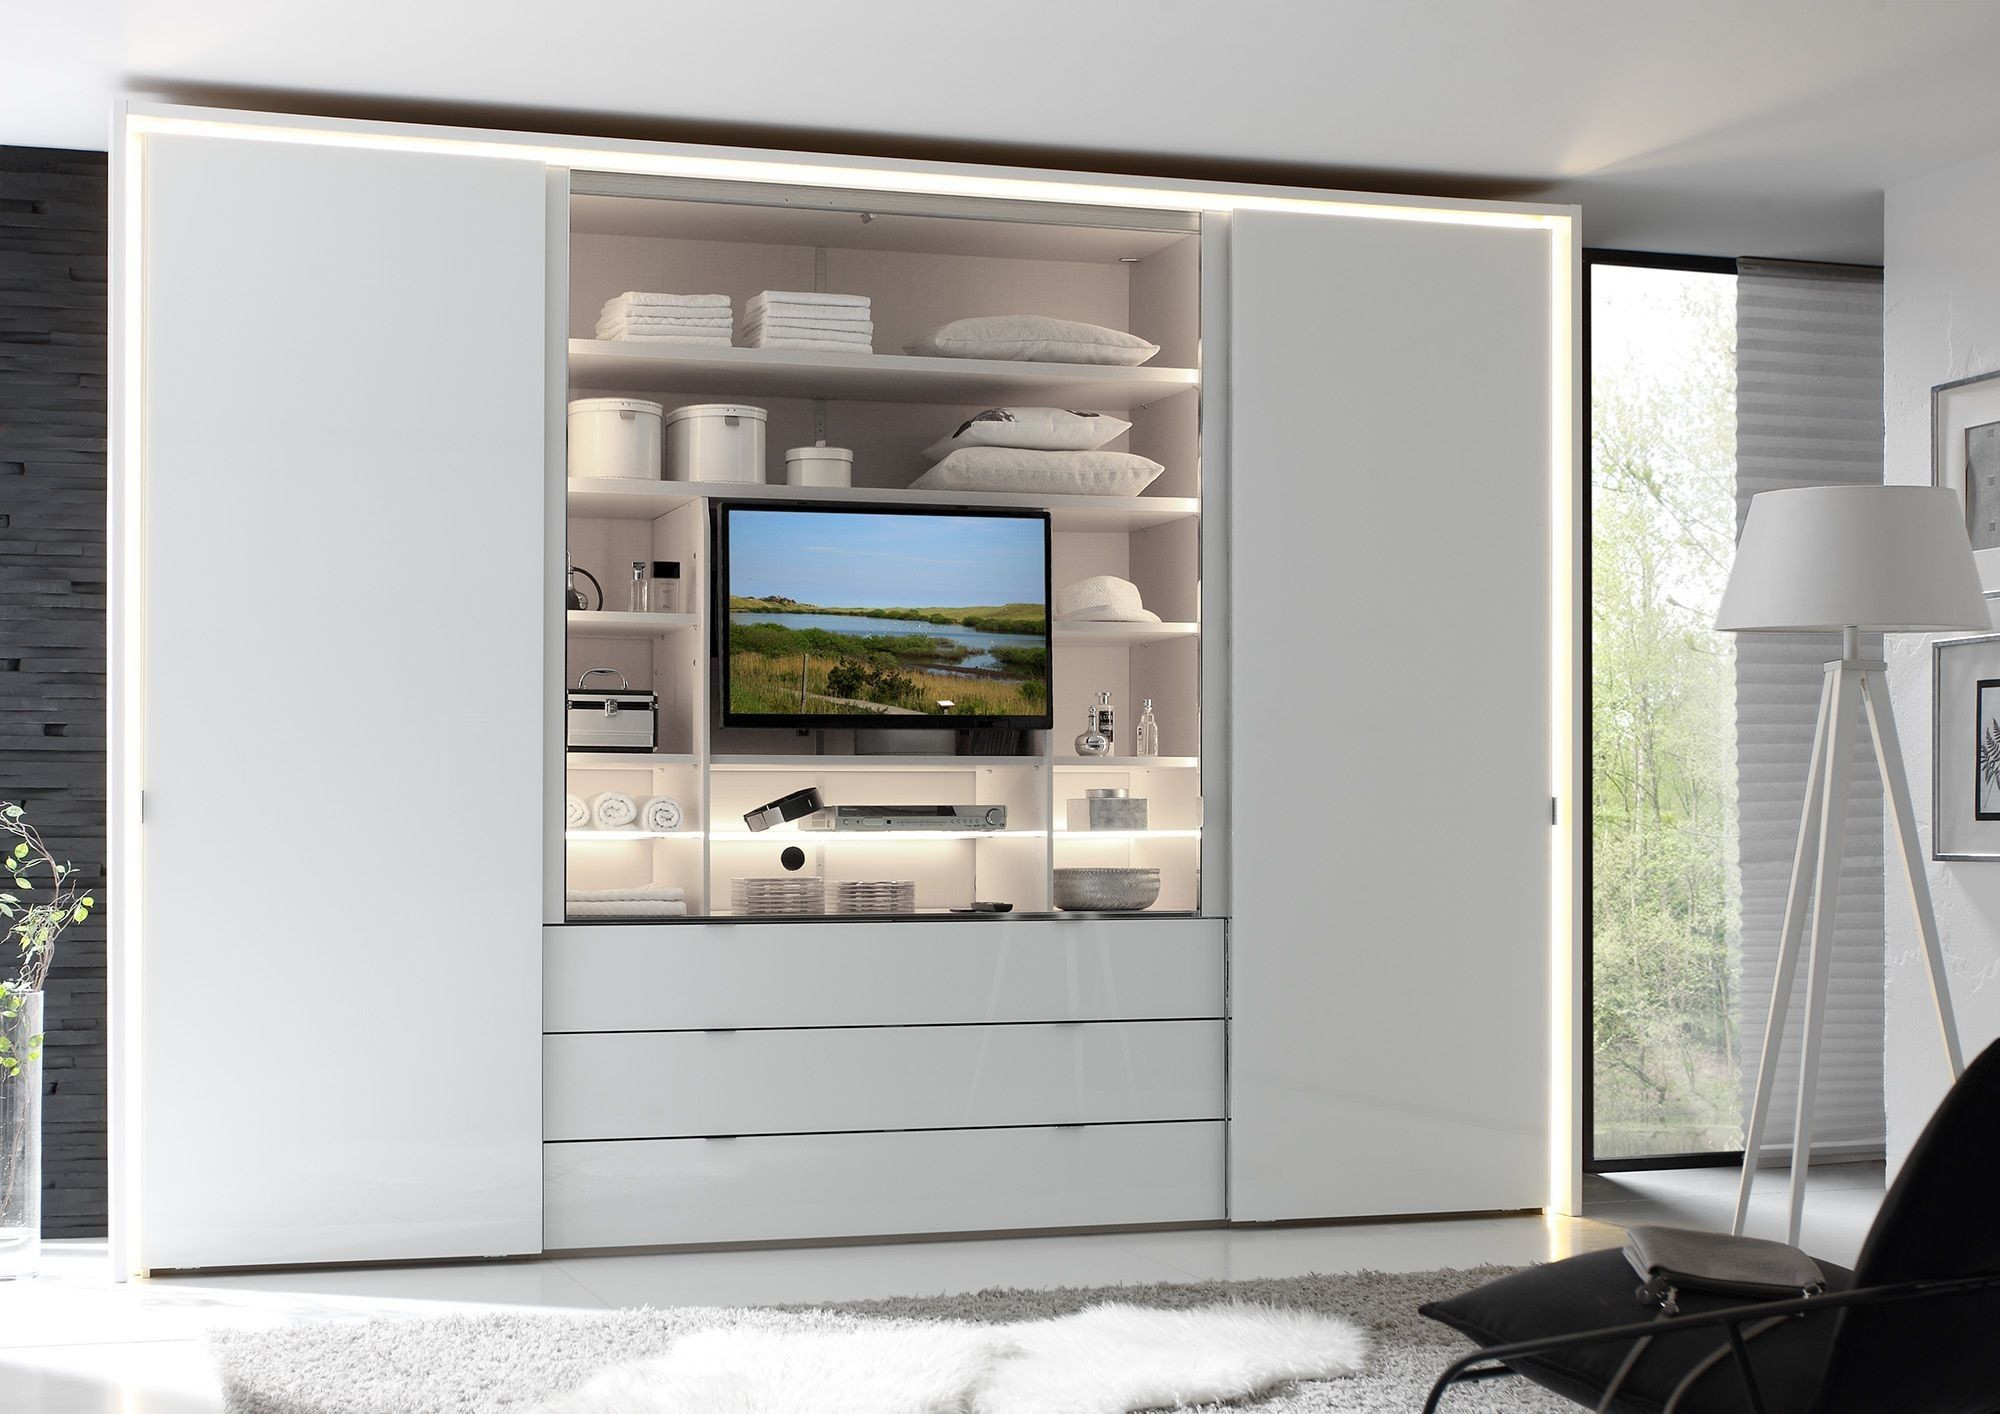 Kleiderschrank Mit Fernsehfach | Home Room Design, Wardrobe Design inside Kleiderschrank Mit Tv Fach Ikea